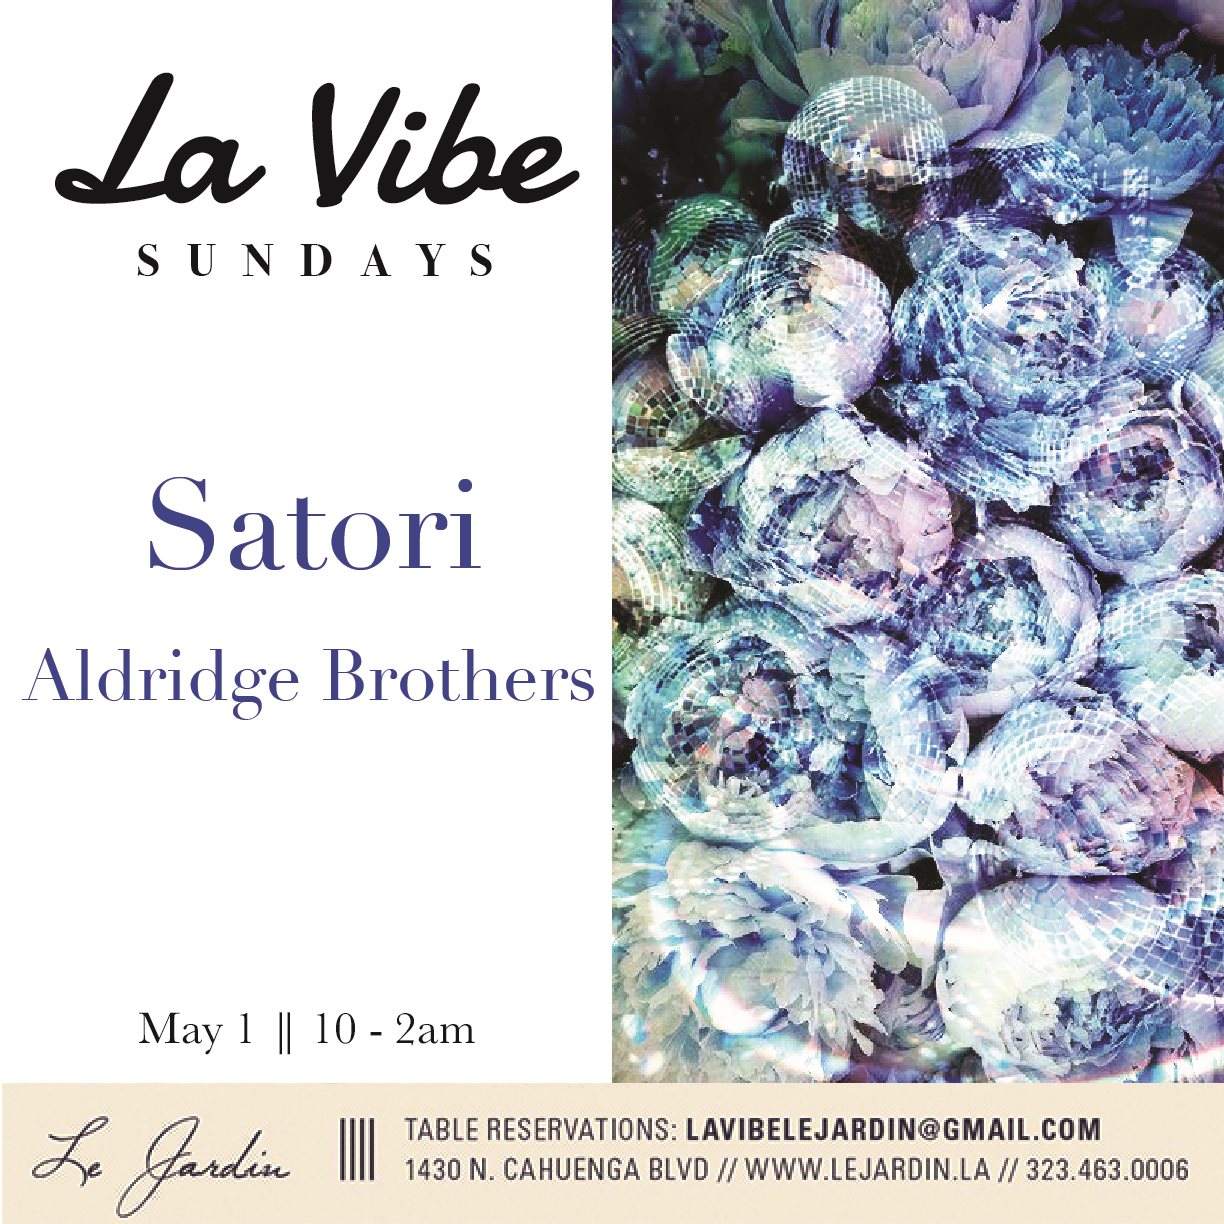 La Vibe Sundays ll Satori l Aldridge Brothers ll - Página frontal